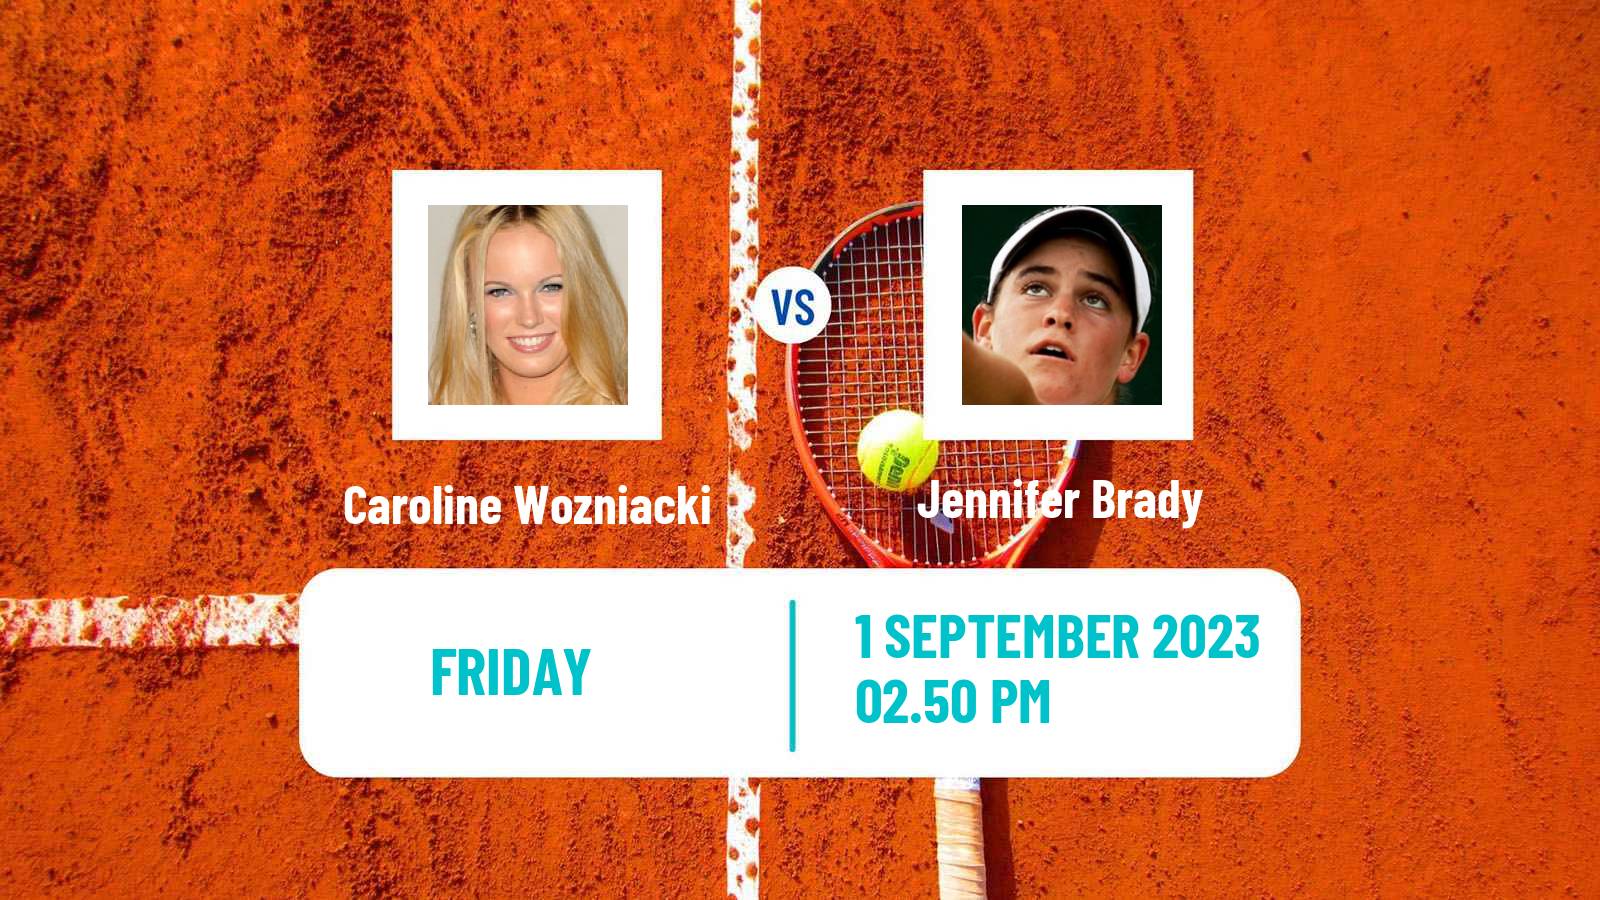 Tennis WTA US Open Caroline Wozniacki - Jennifer Brady